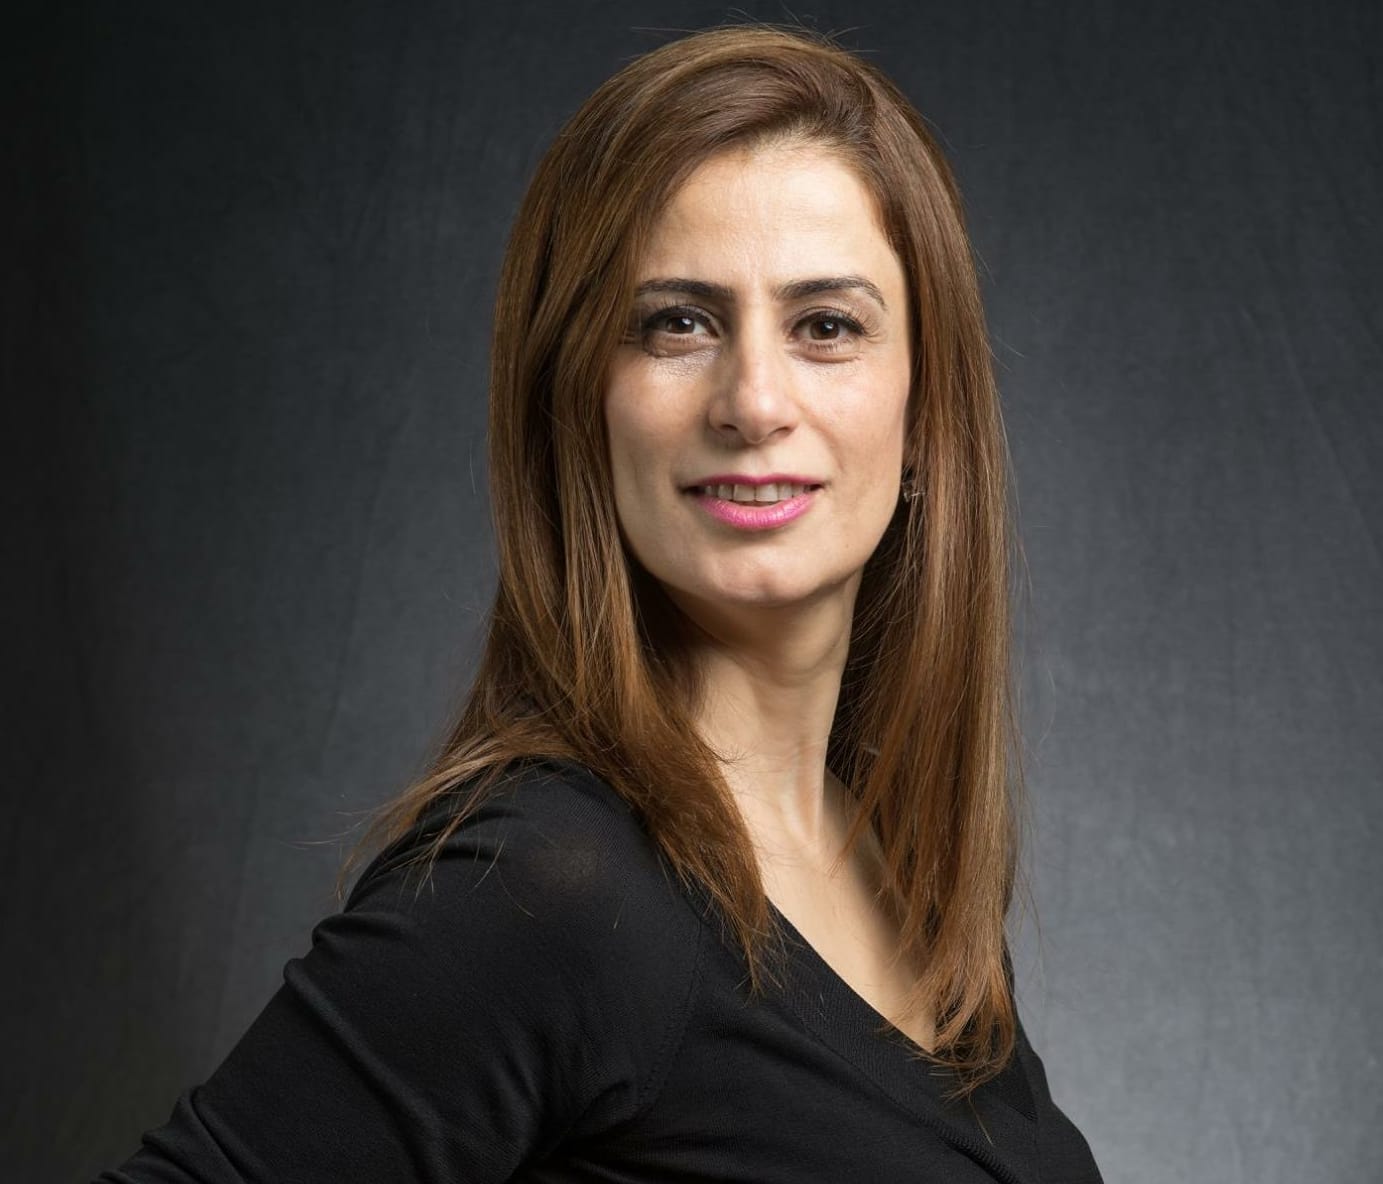 المخرجة عايدة شلبفر مدير للمسابقة الرسمية للأفلام الروائية بالدورة ال ٤٠ لمهرجان الإسكندرية